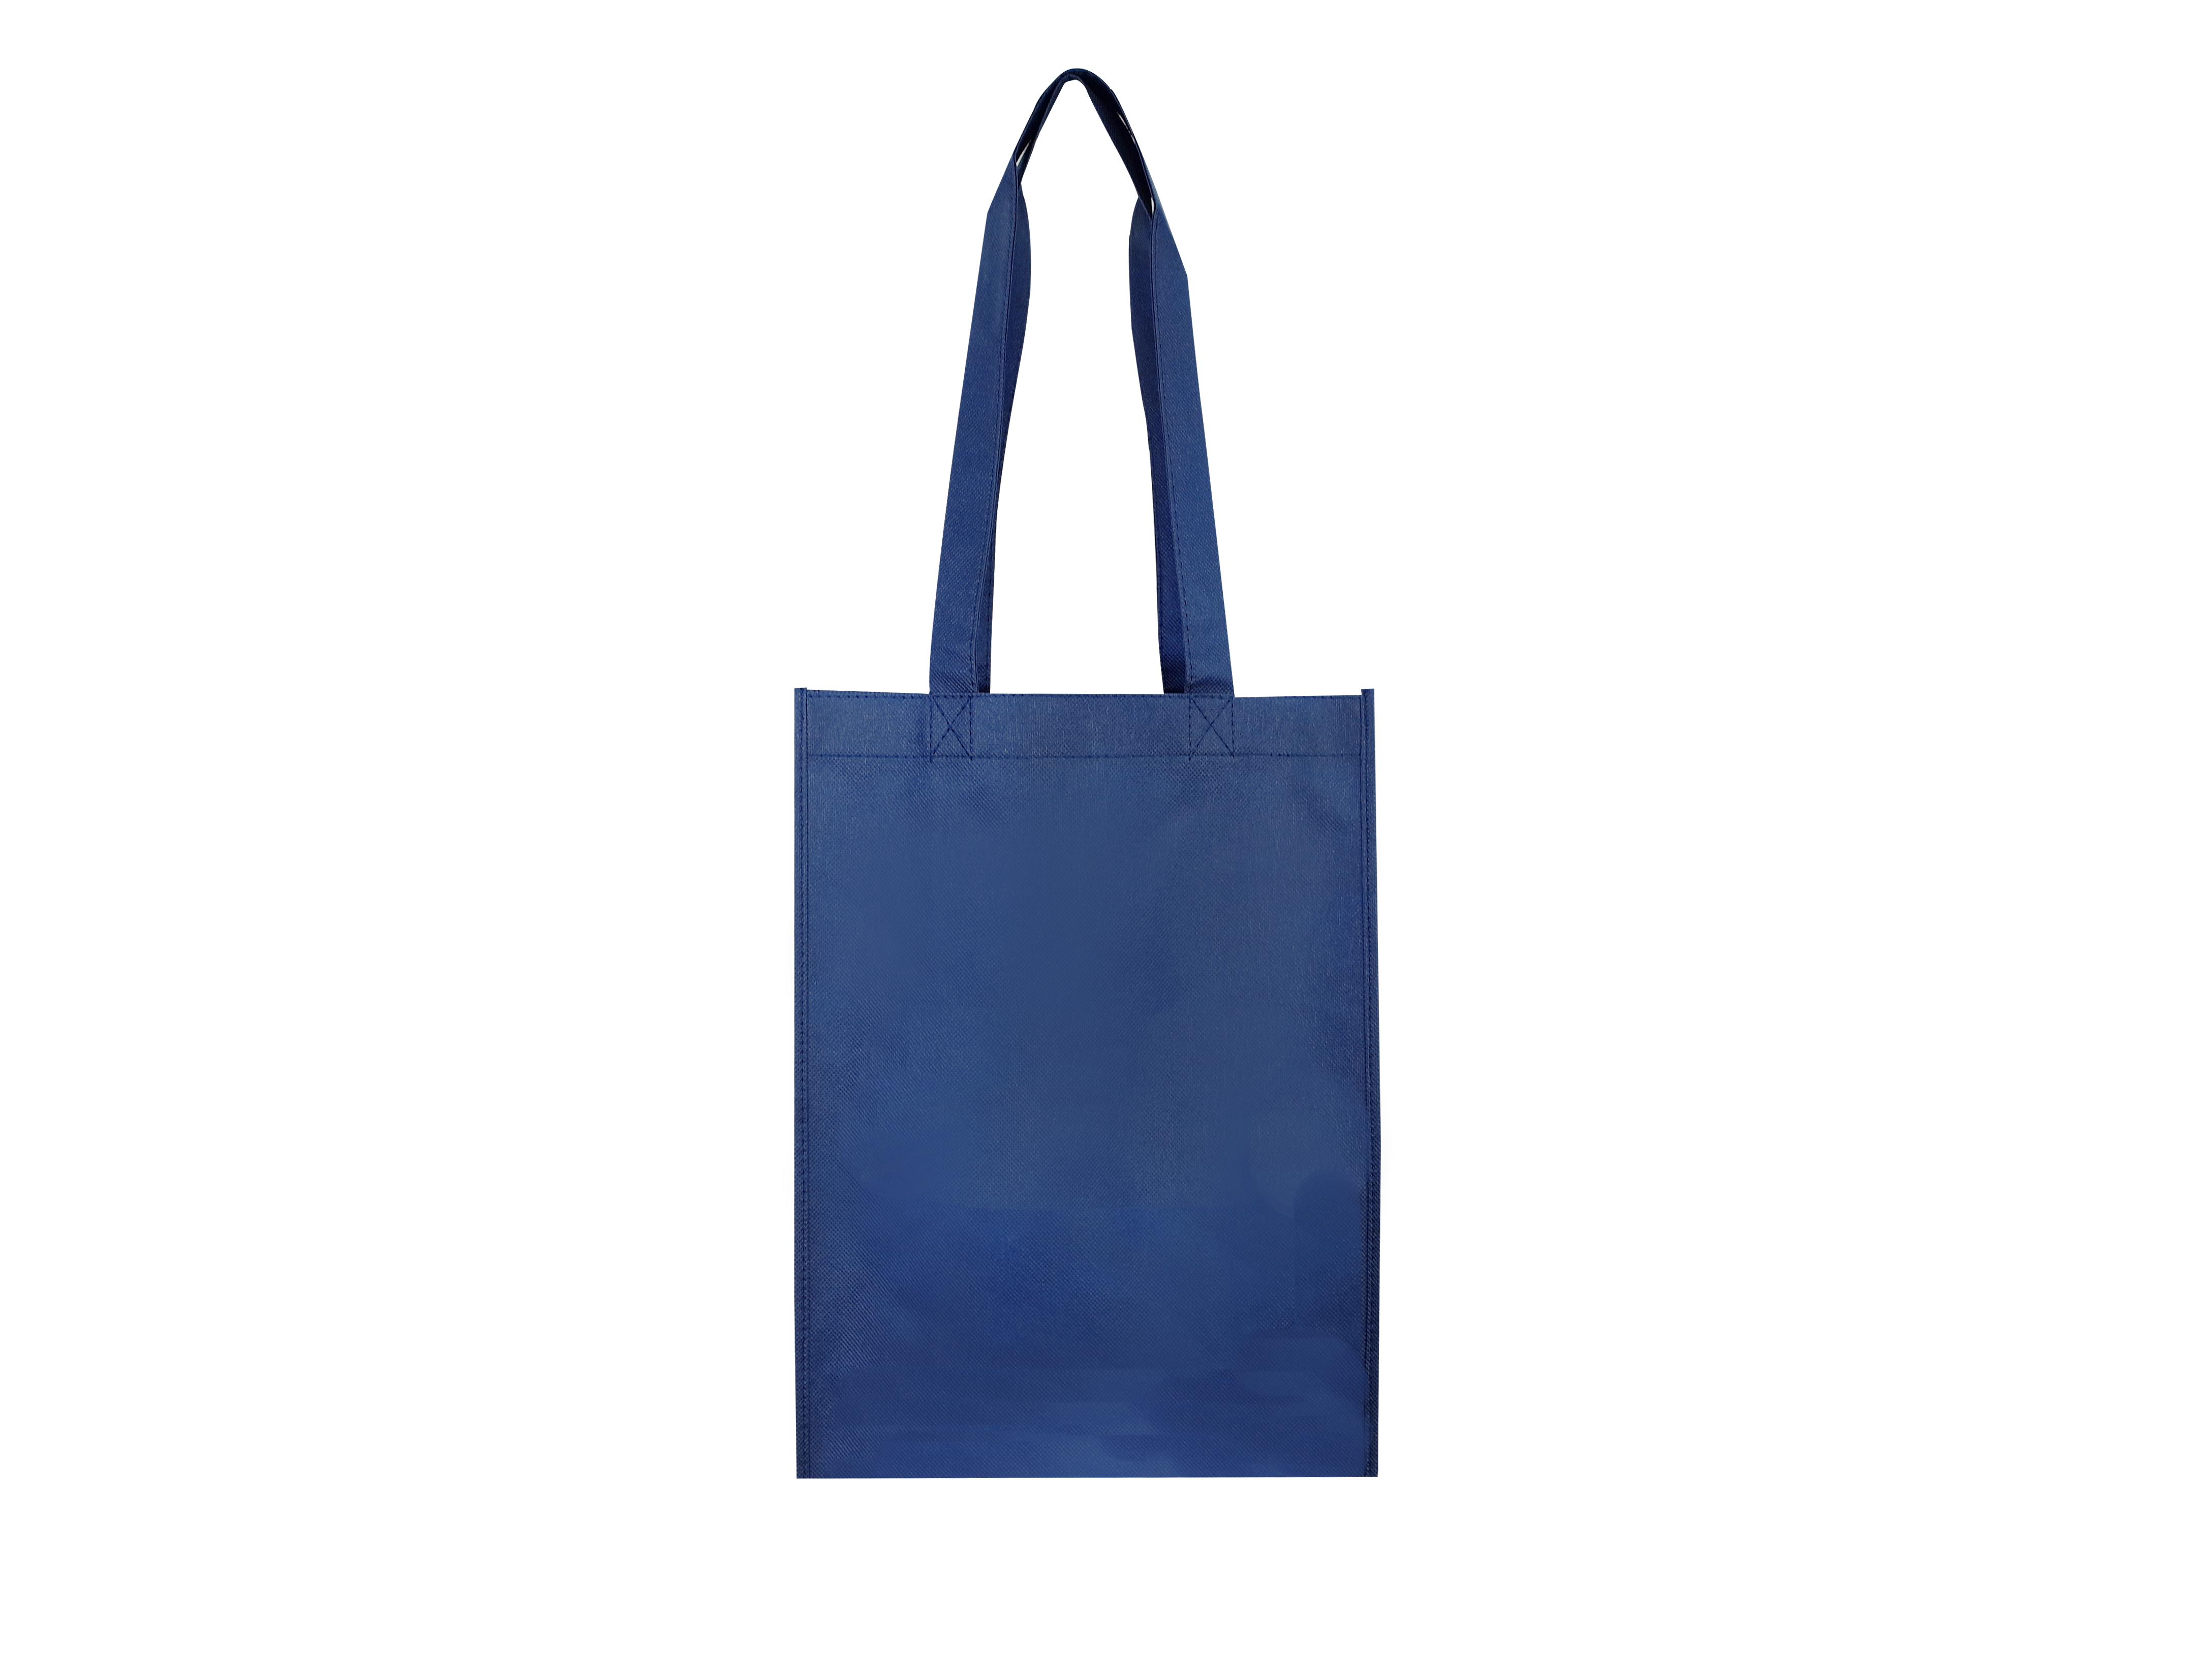 【客製商品】不織布 環保袋 - 深藍色 C0010